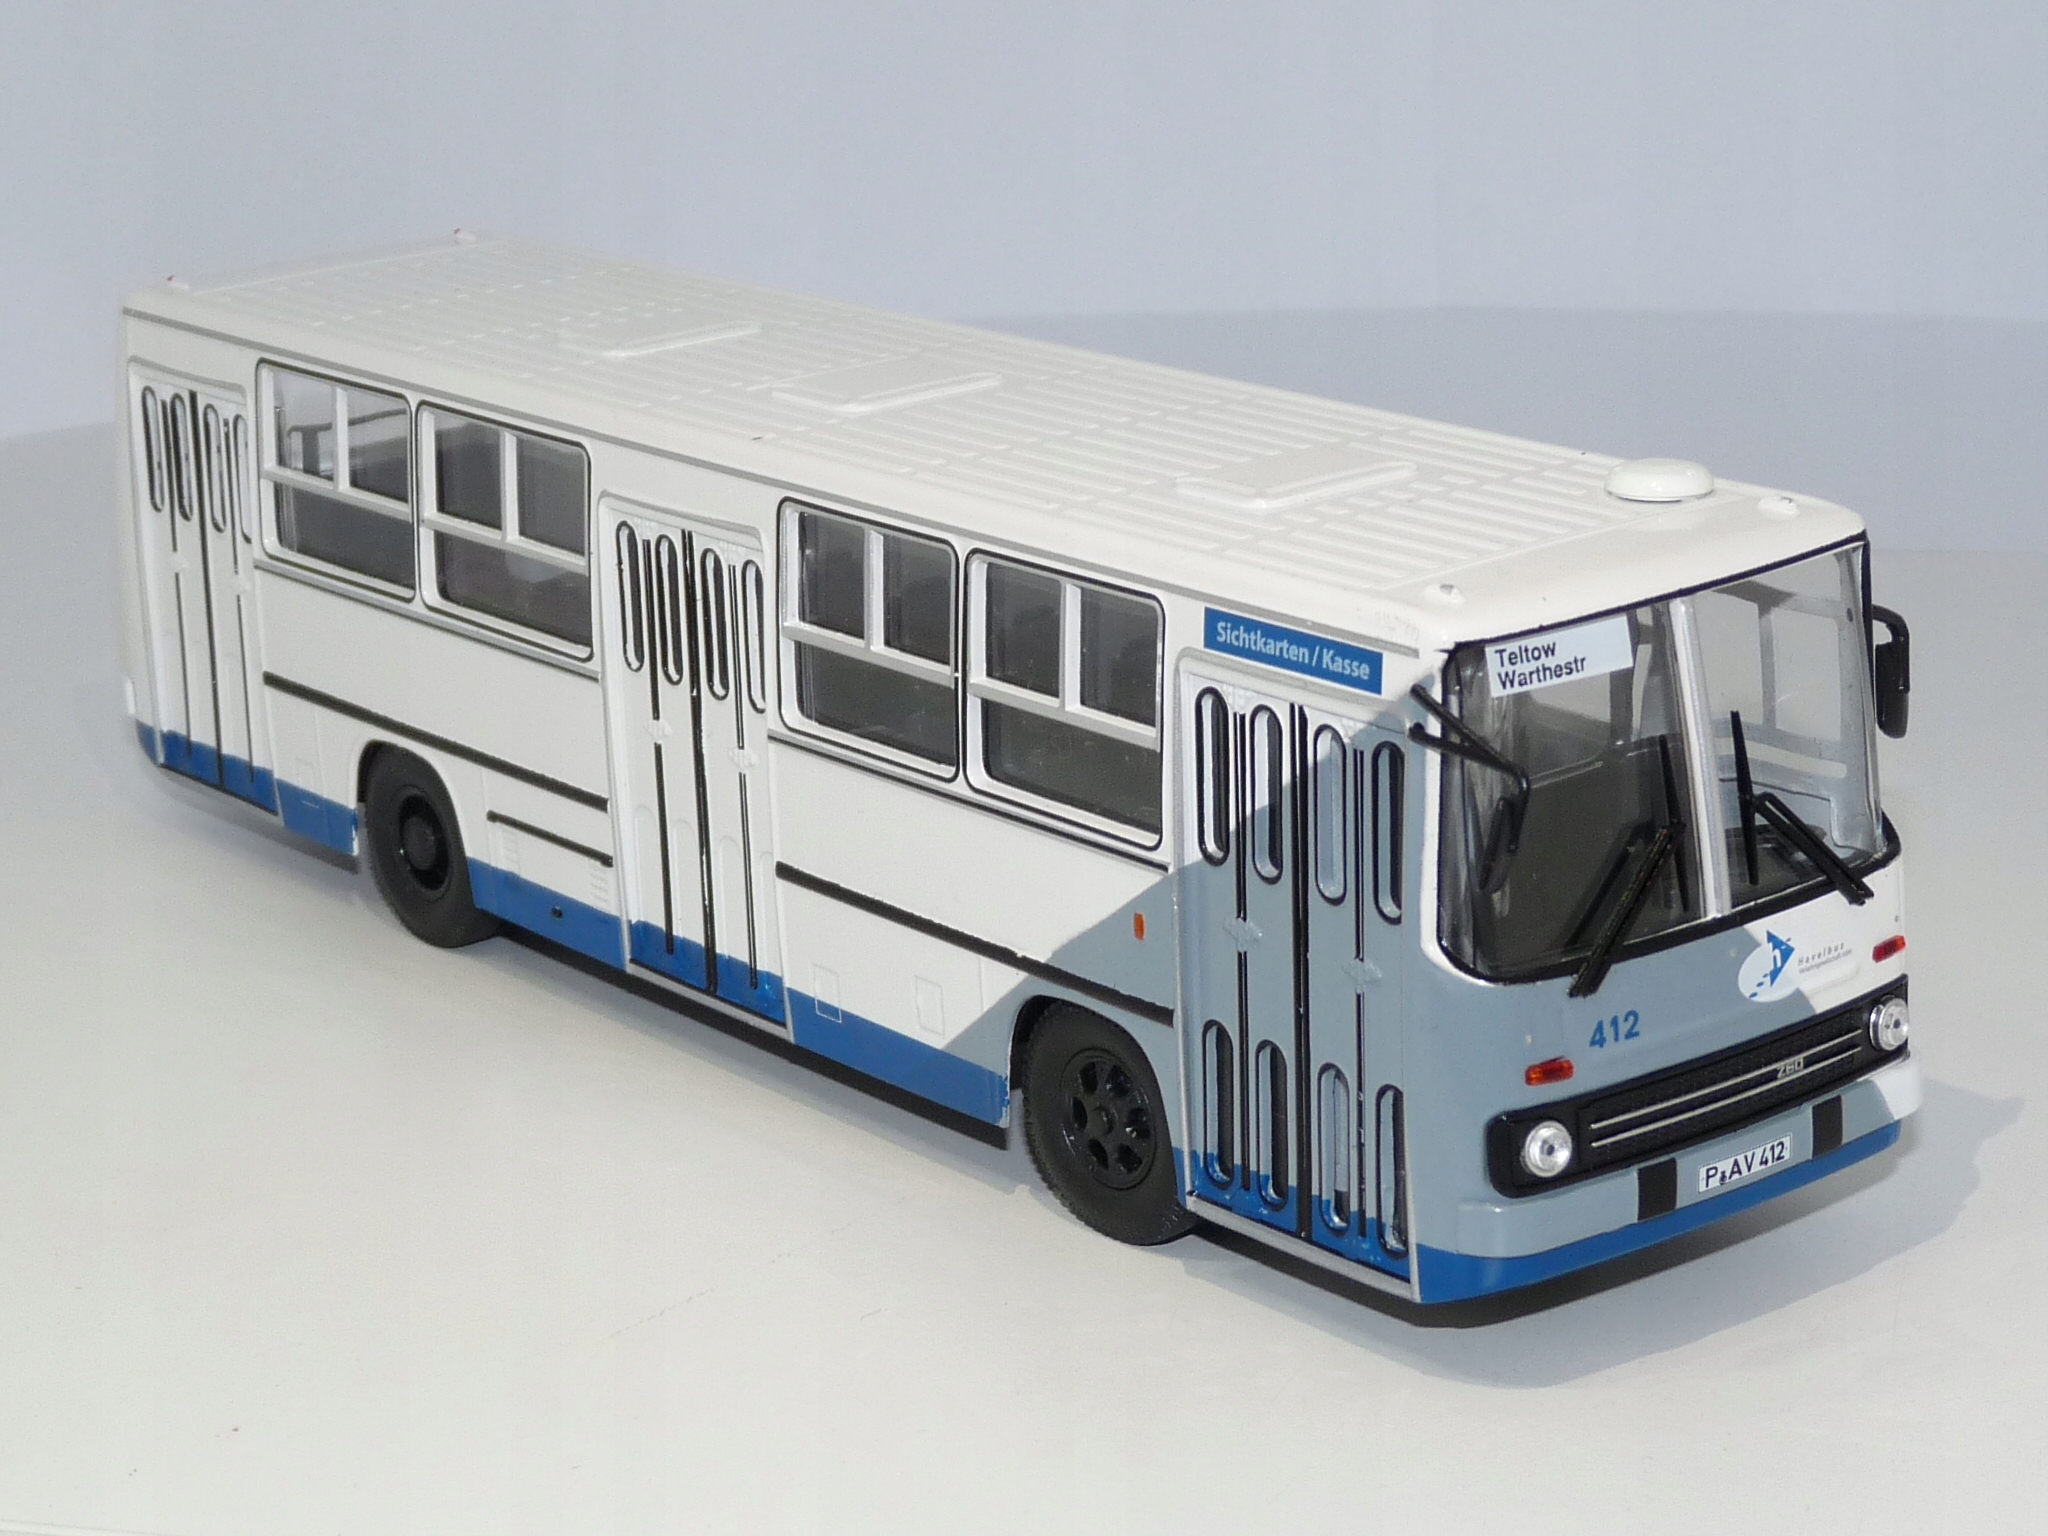 Brekina Ikarus 280.03 Bus 1972 white blue 59761